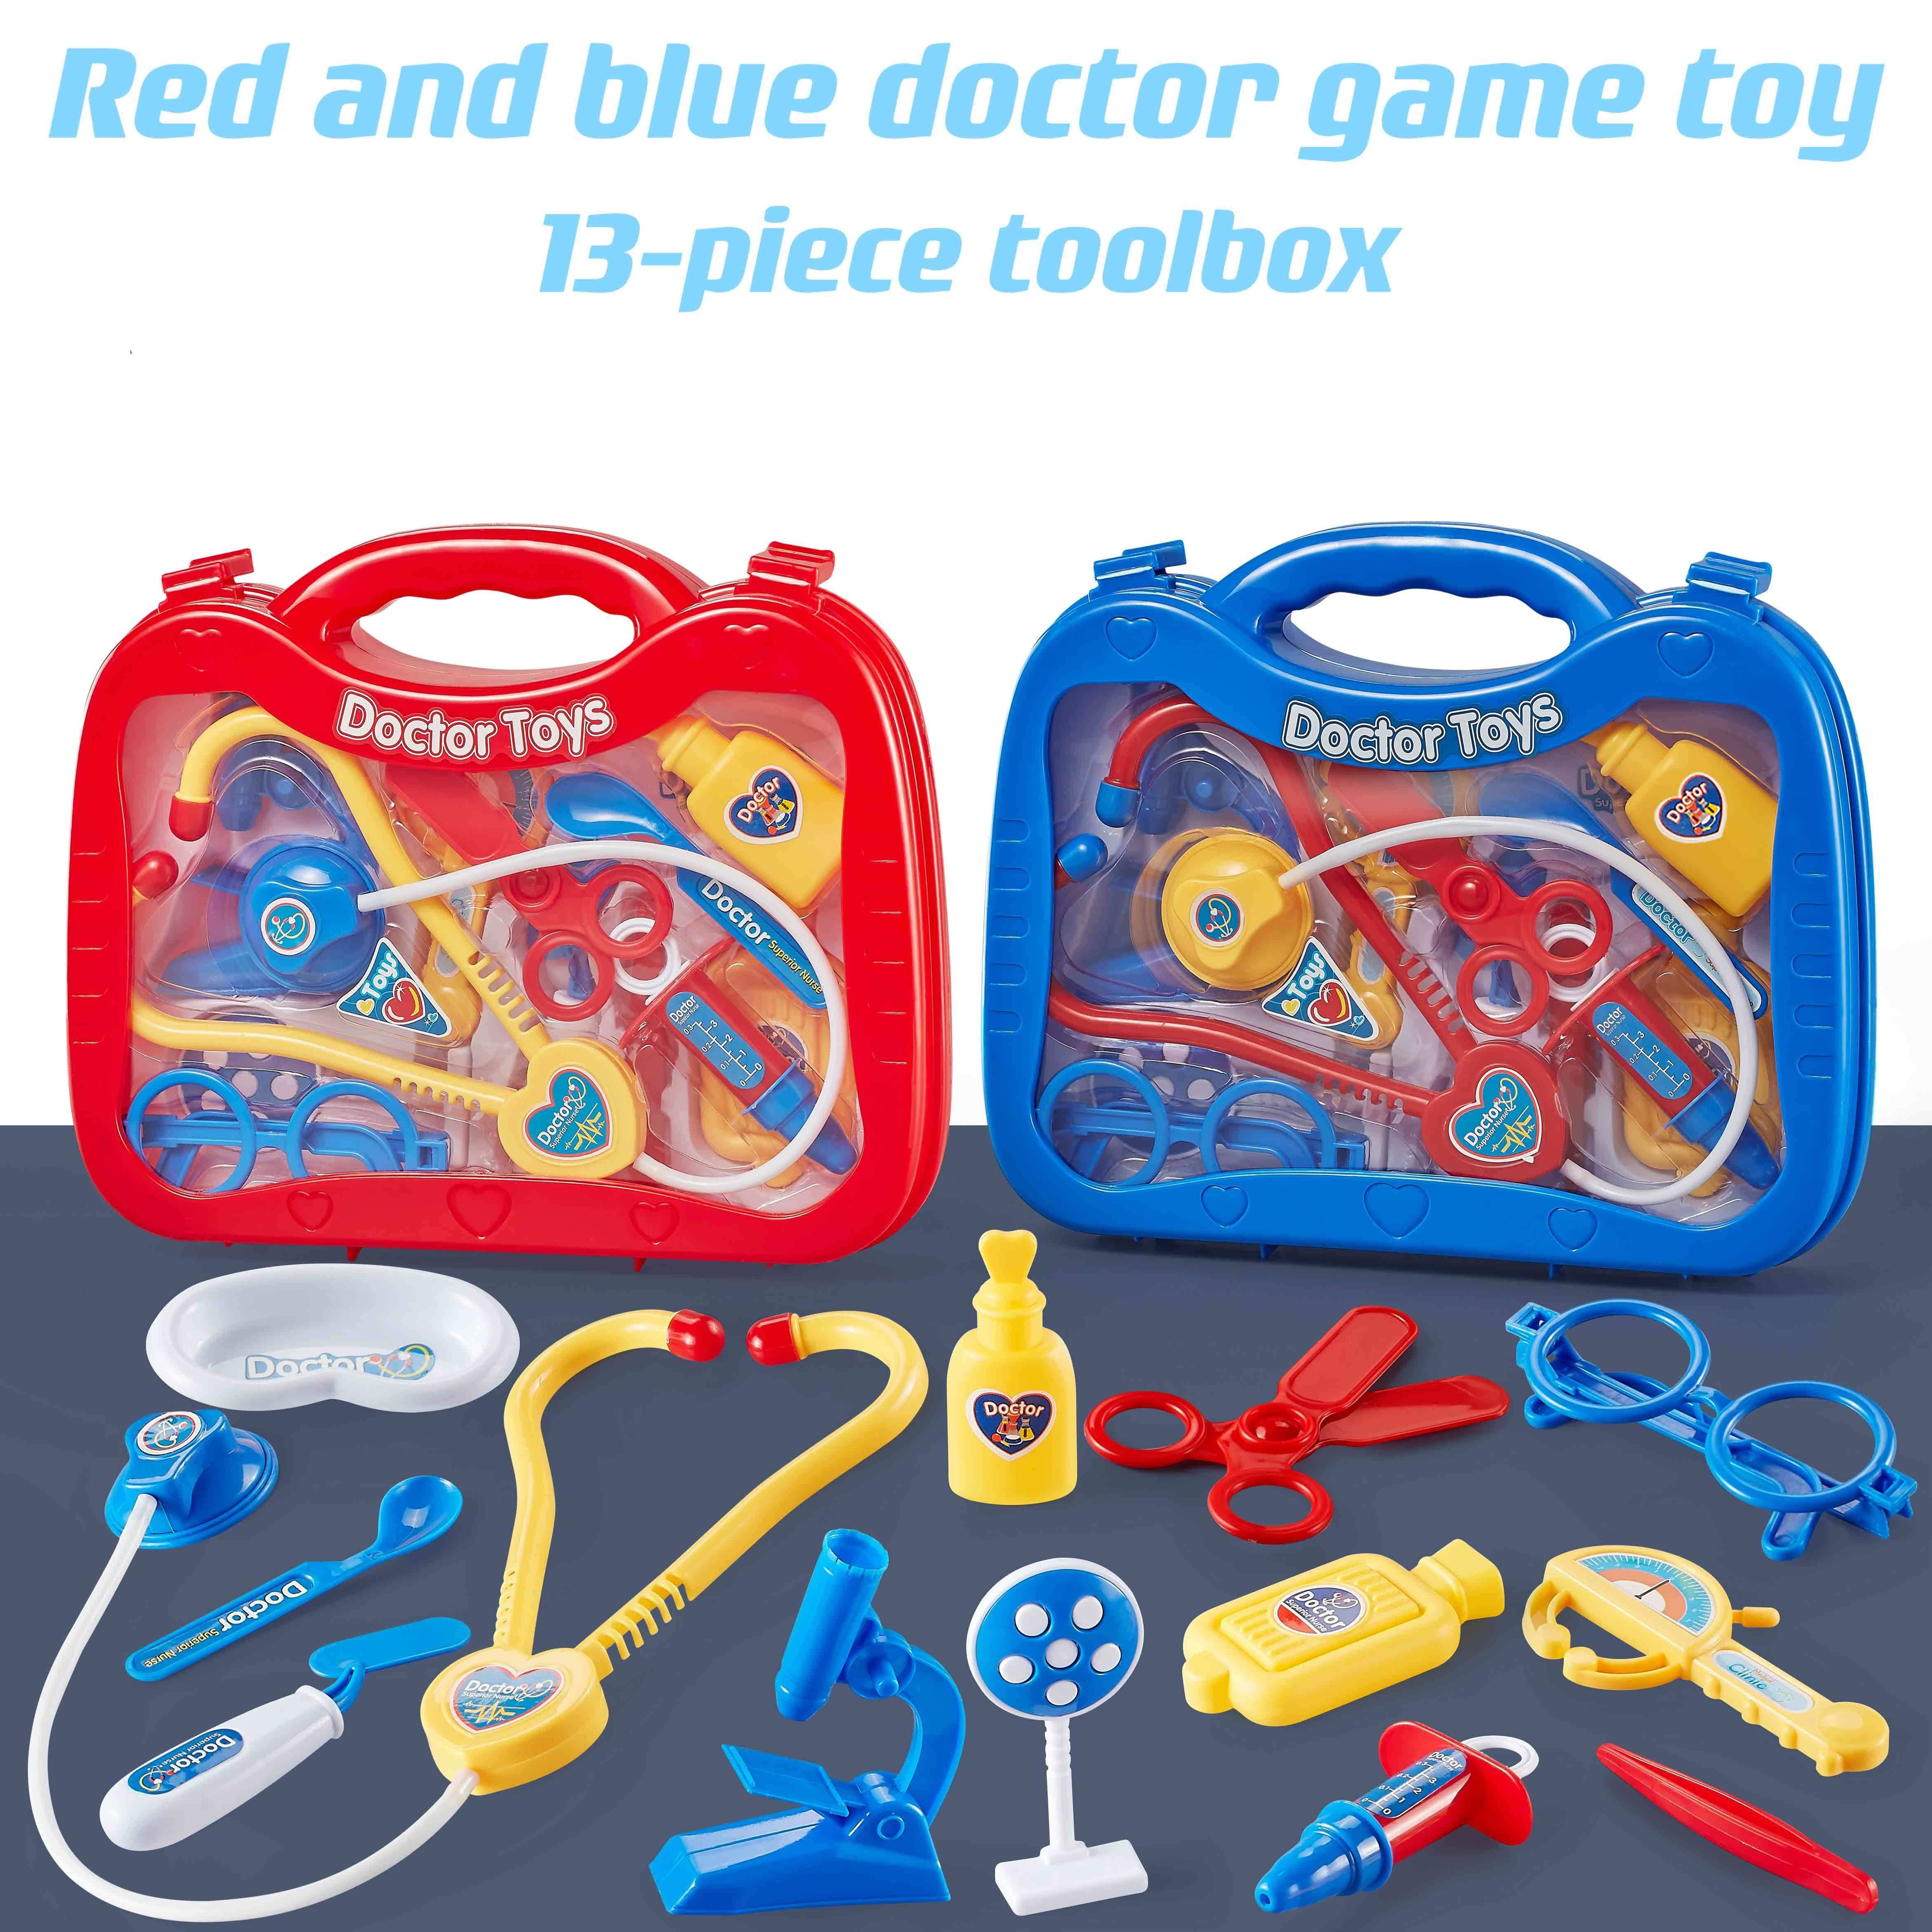  Acelane Kit de doctor para niños, juego de juguetes